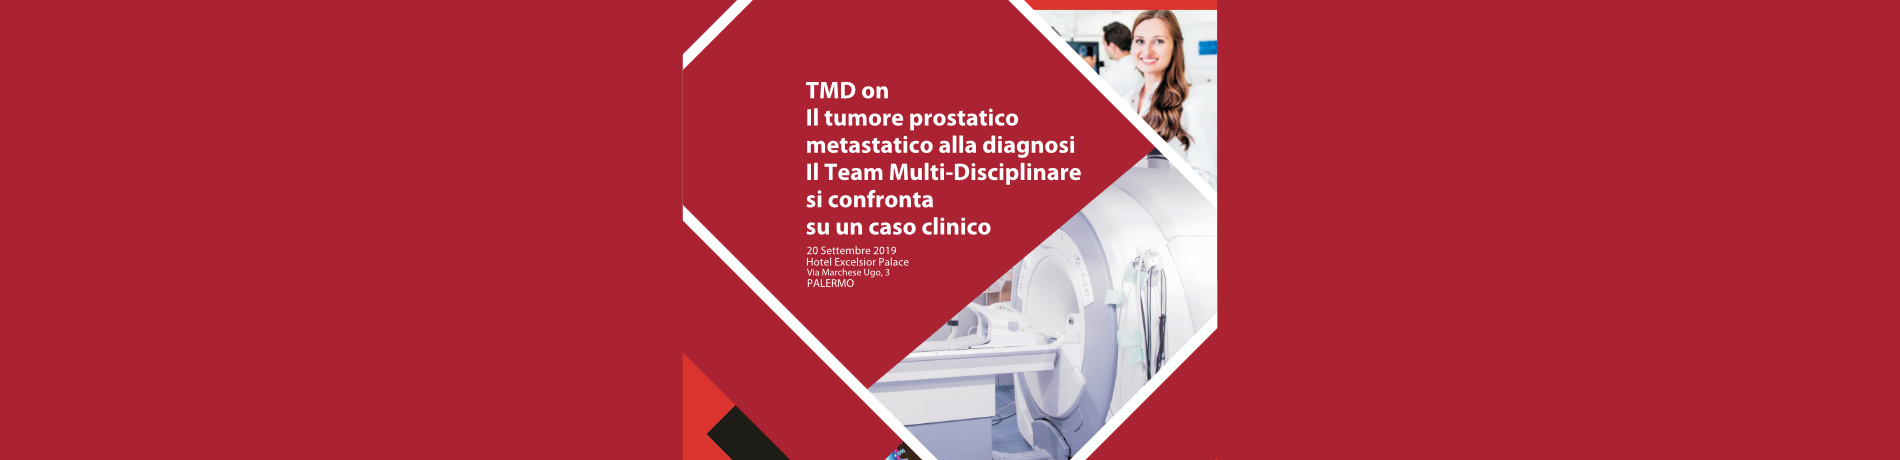 https://www.formedica.it/wp/wp-content/uploads/2019/07/2019_09_20_TMD-on.Il-tumore-prostatico-metastatico-alla-diagnosi.Il-Team-Multi-Disciplinare-si-confronta-su-un-caso-clinico.jpg